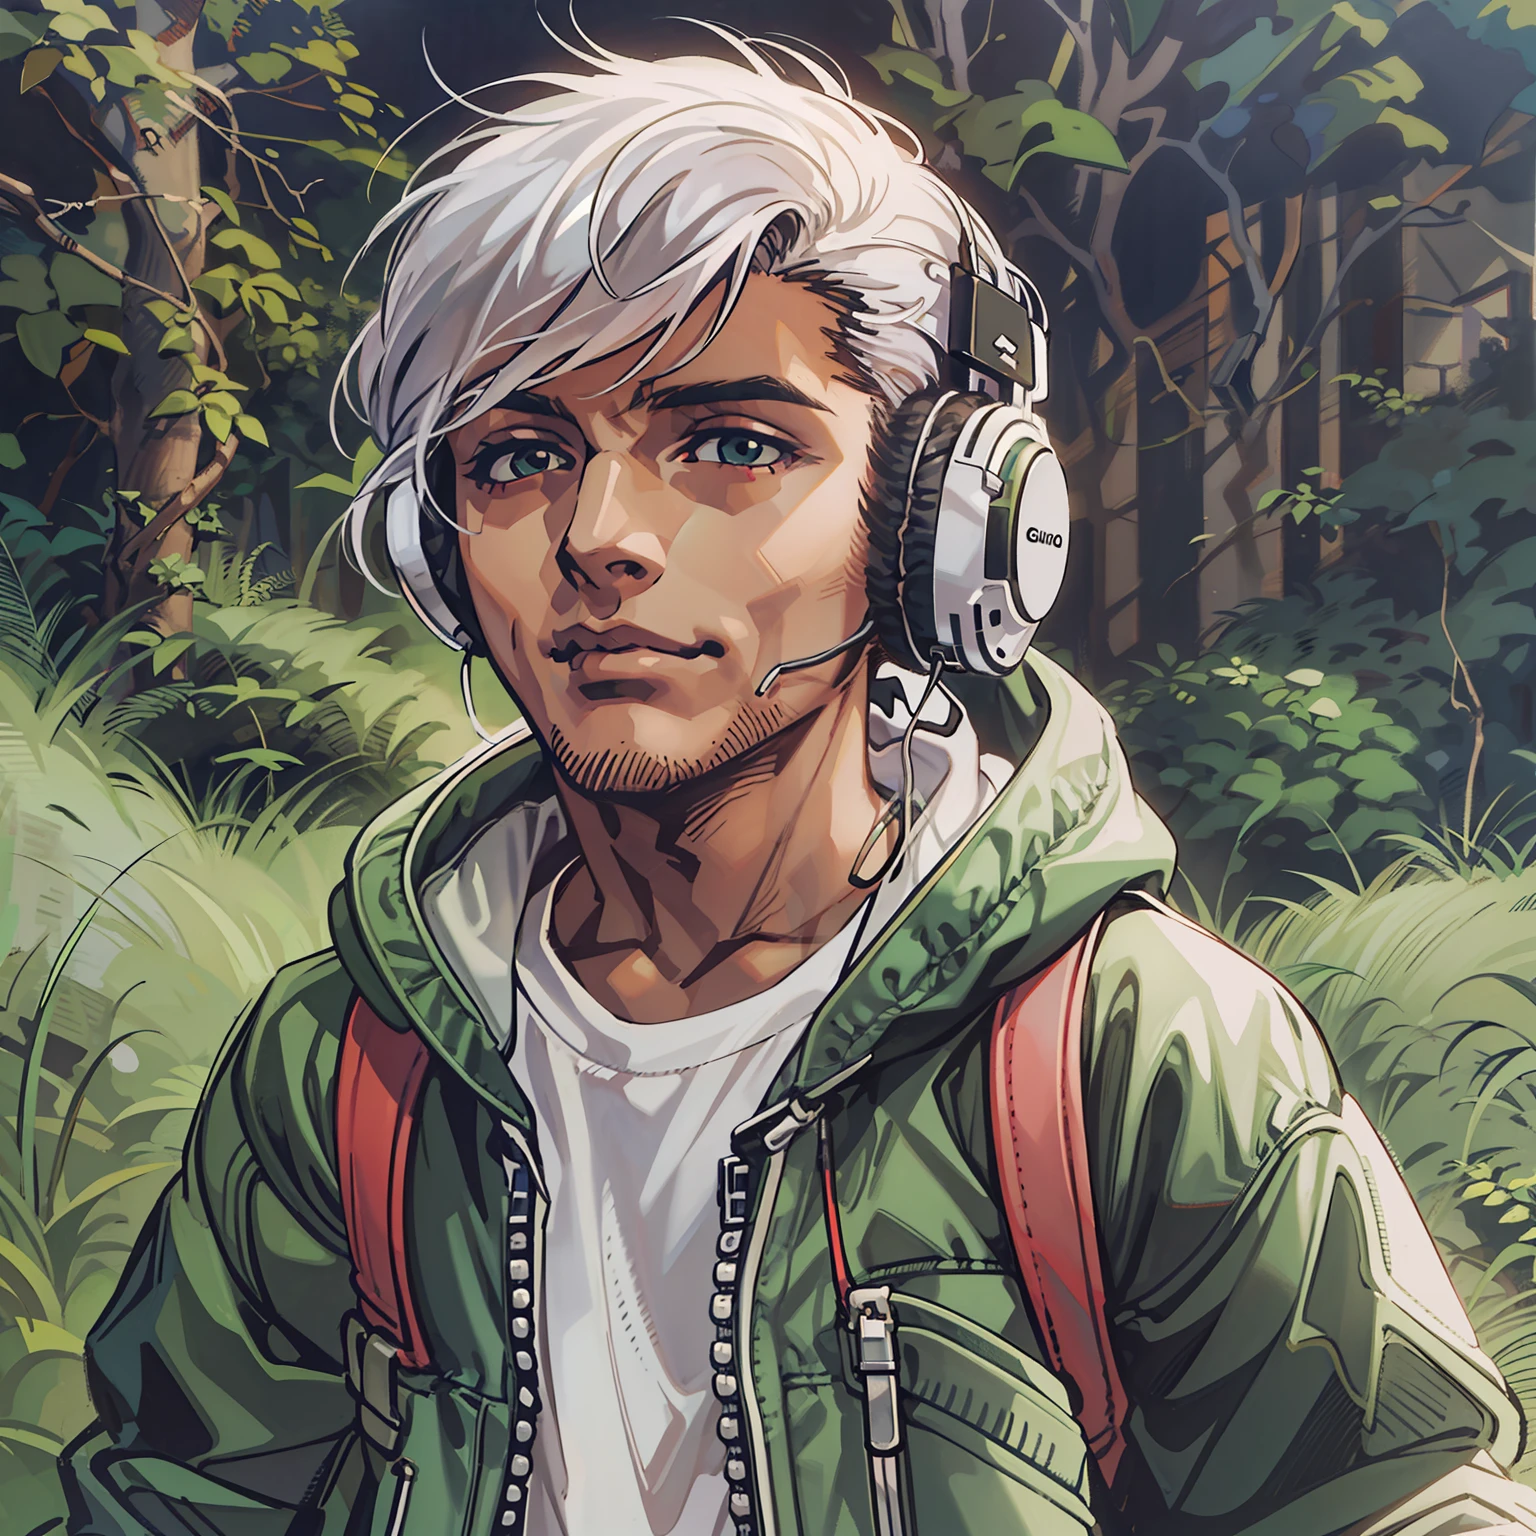 menino adolescente bonito de cabelo branco, with stylish clothing and a white headphone around his neck. em cima de um morro com gramado verde.